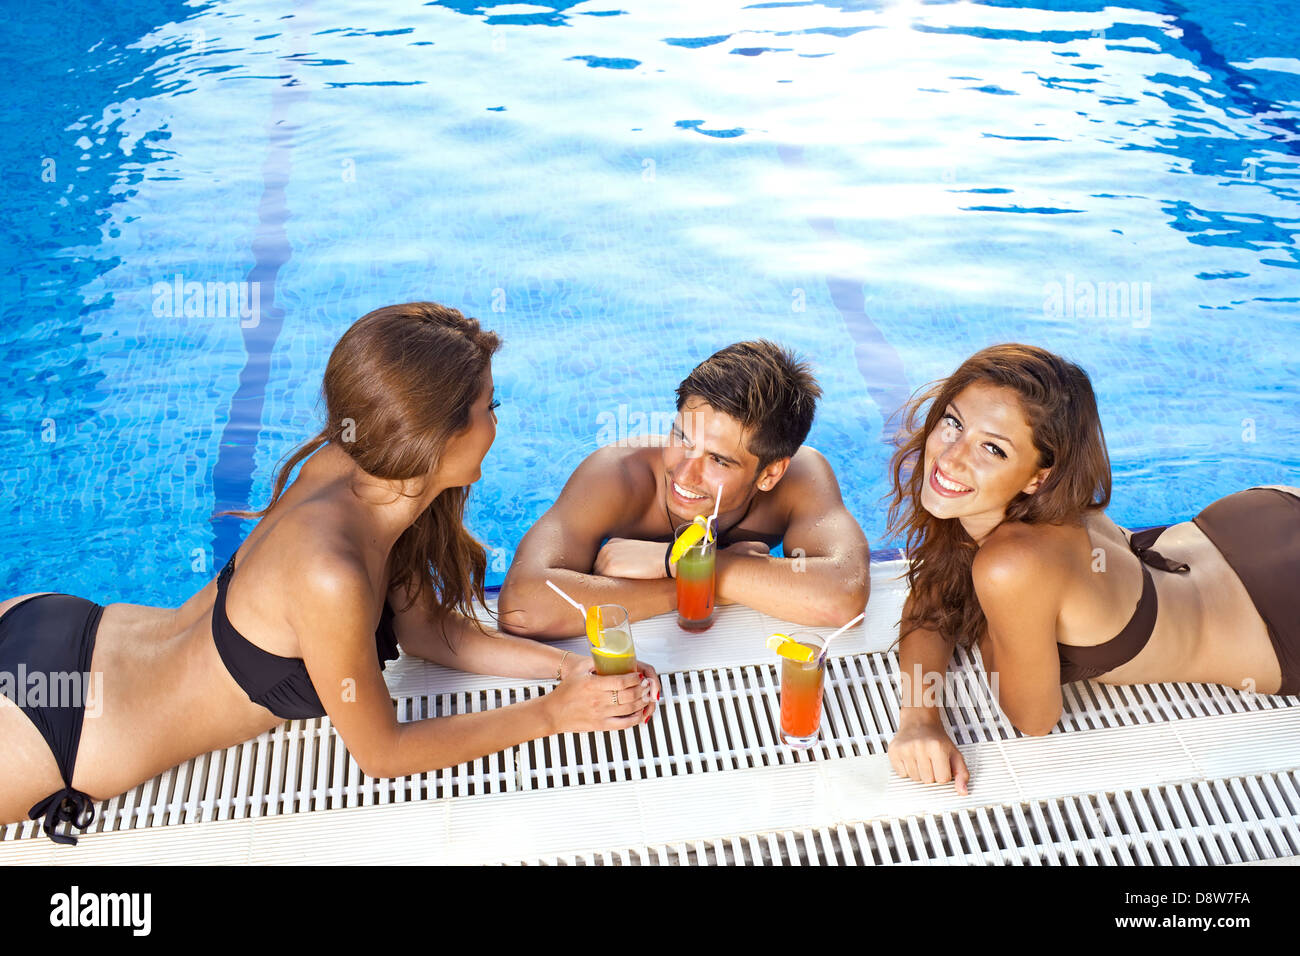 Apuesto de en una piscina azul brillante charlando con dos hermosas mujeres bikini tomando el sol en el borde Fotografía de stock -